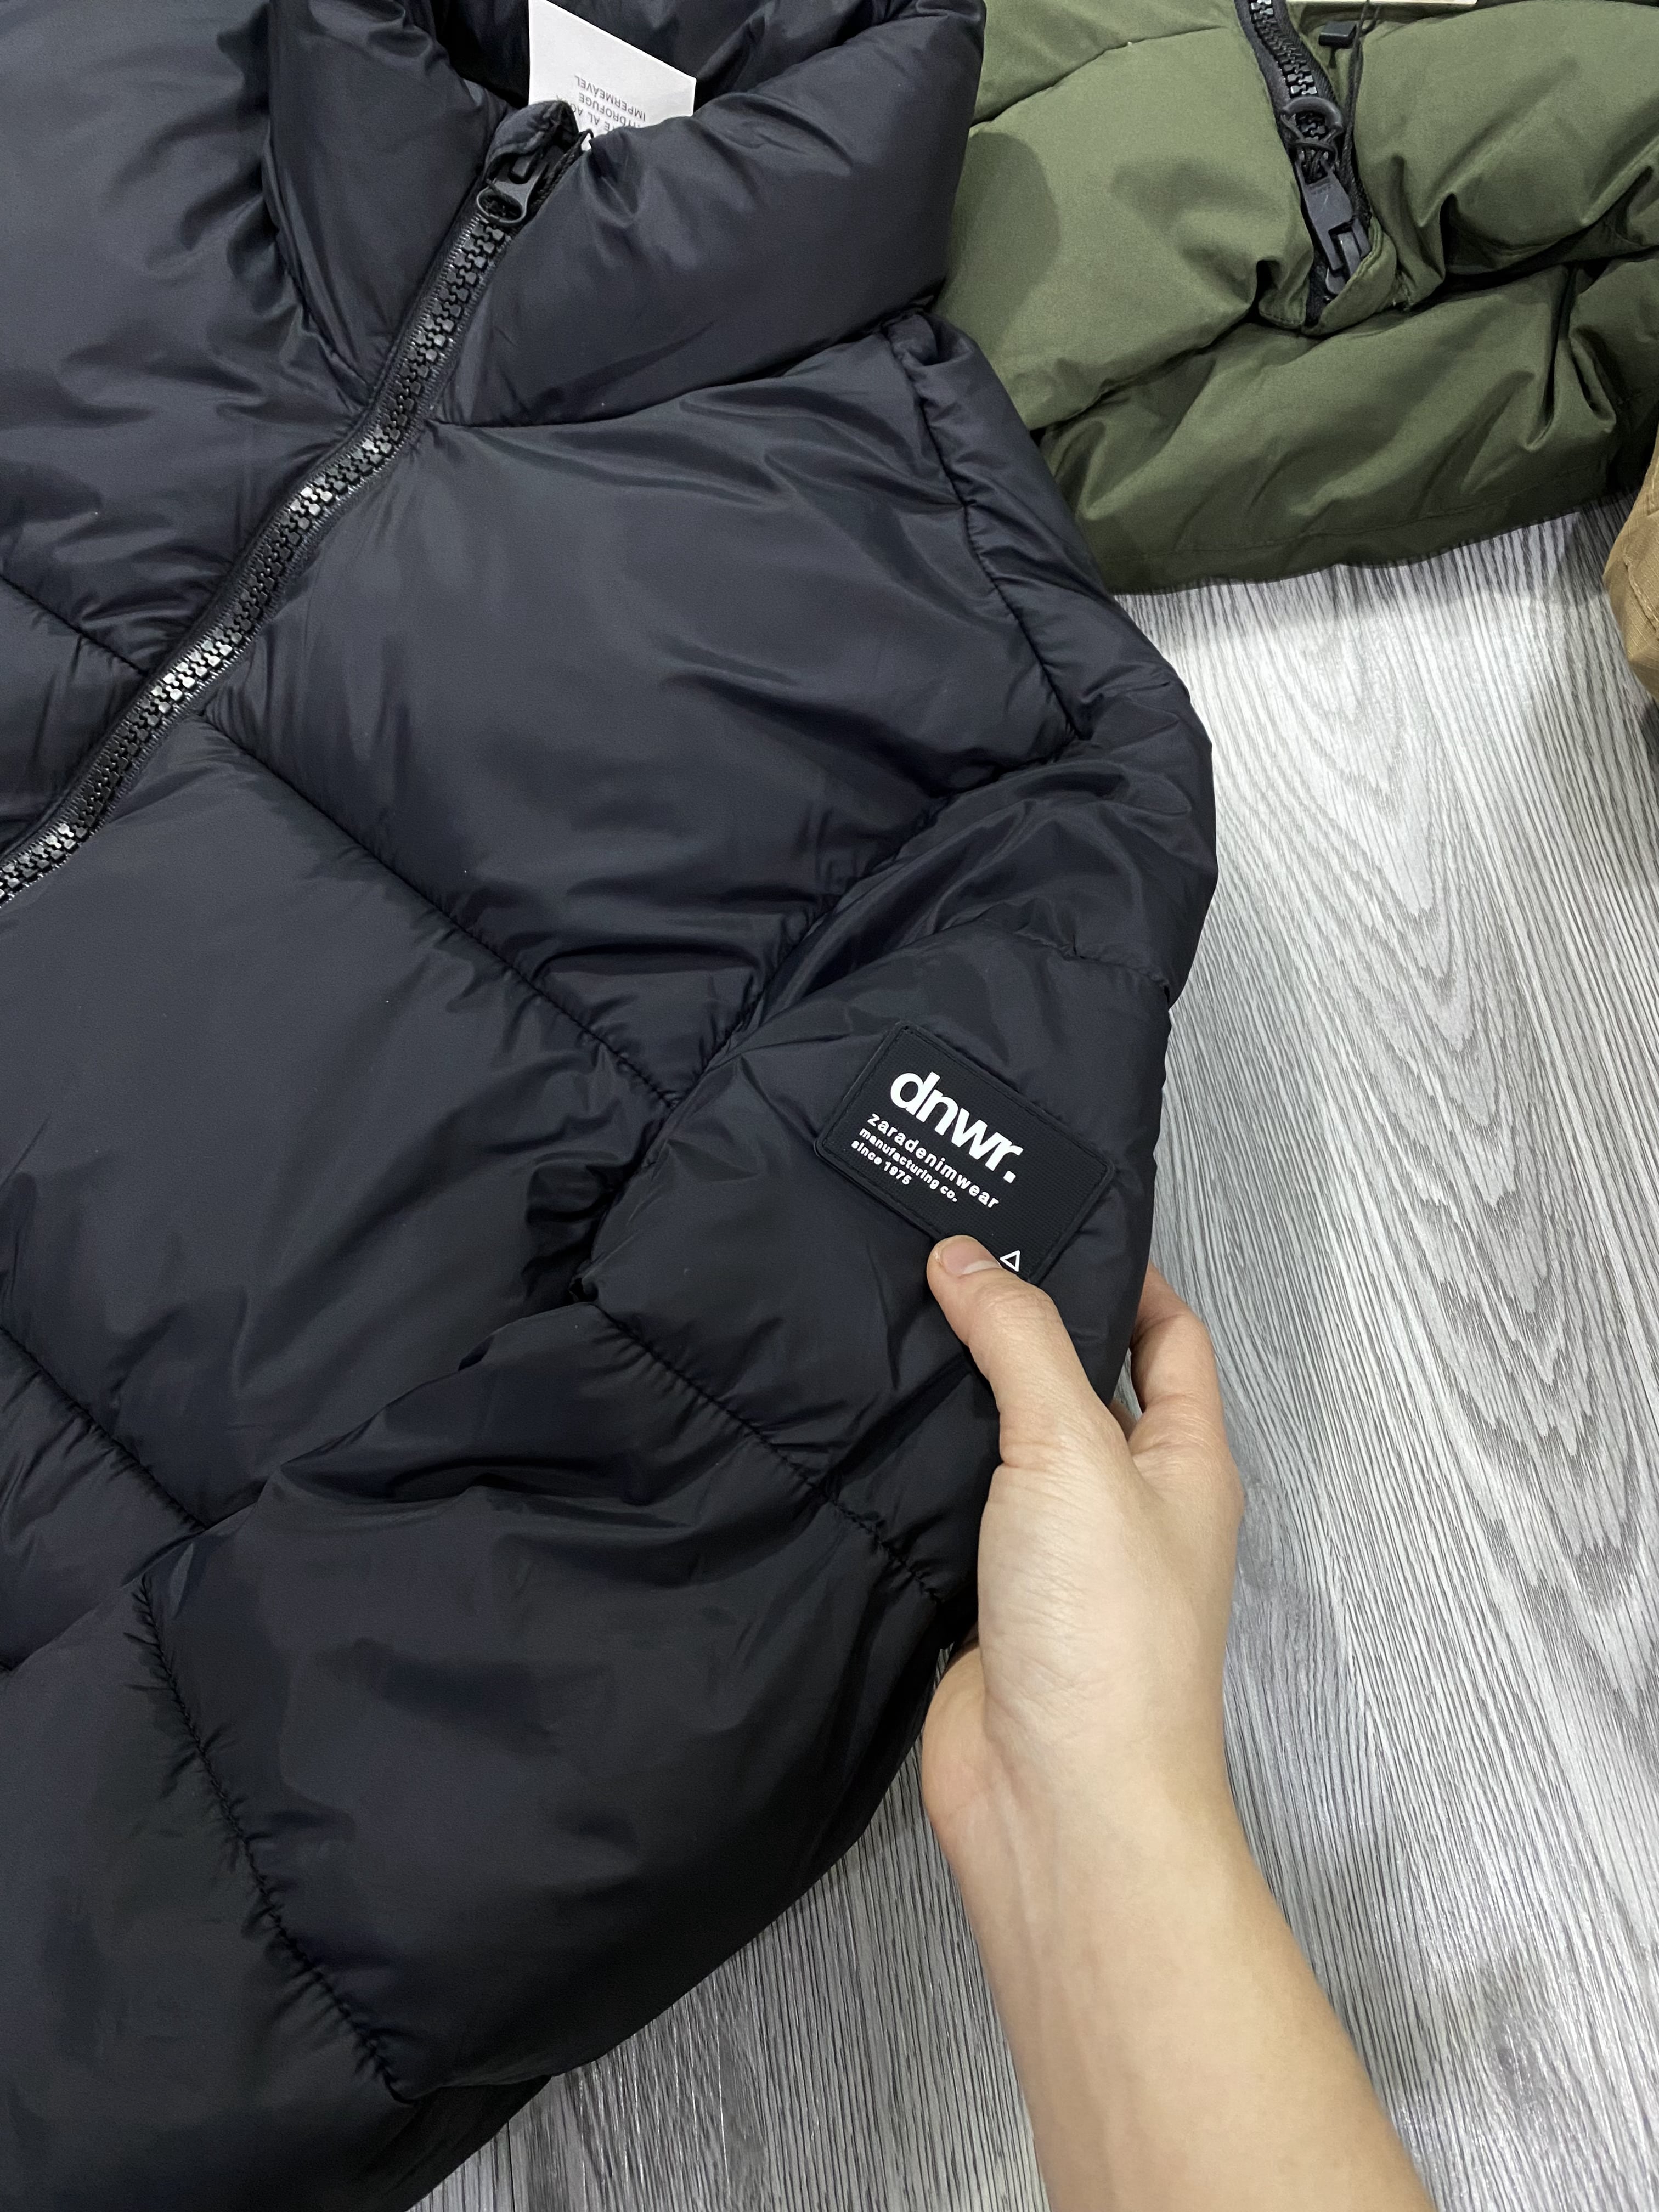 ÁO KHOÁC CHÍNH HÃNG - Ái Khoác Phao Zara ripstop puffer jacket black - 6985/316